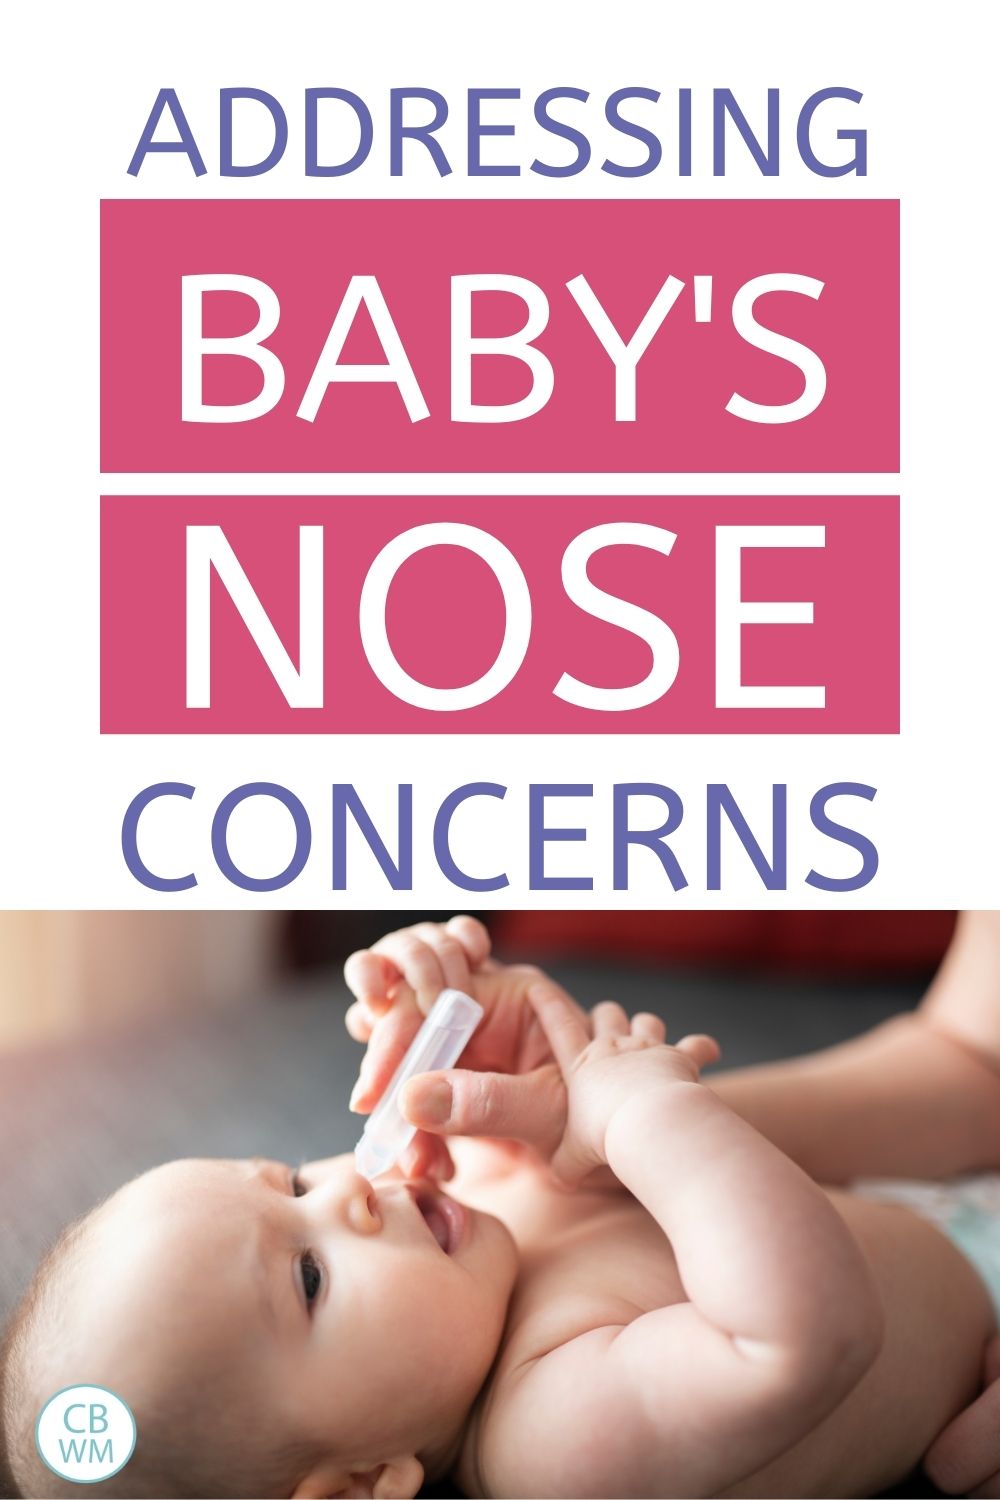 Baby nose concerns